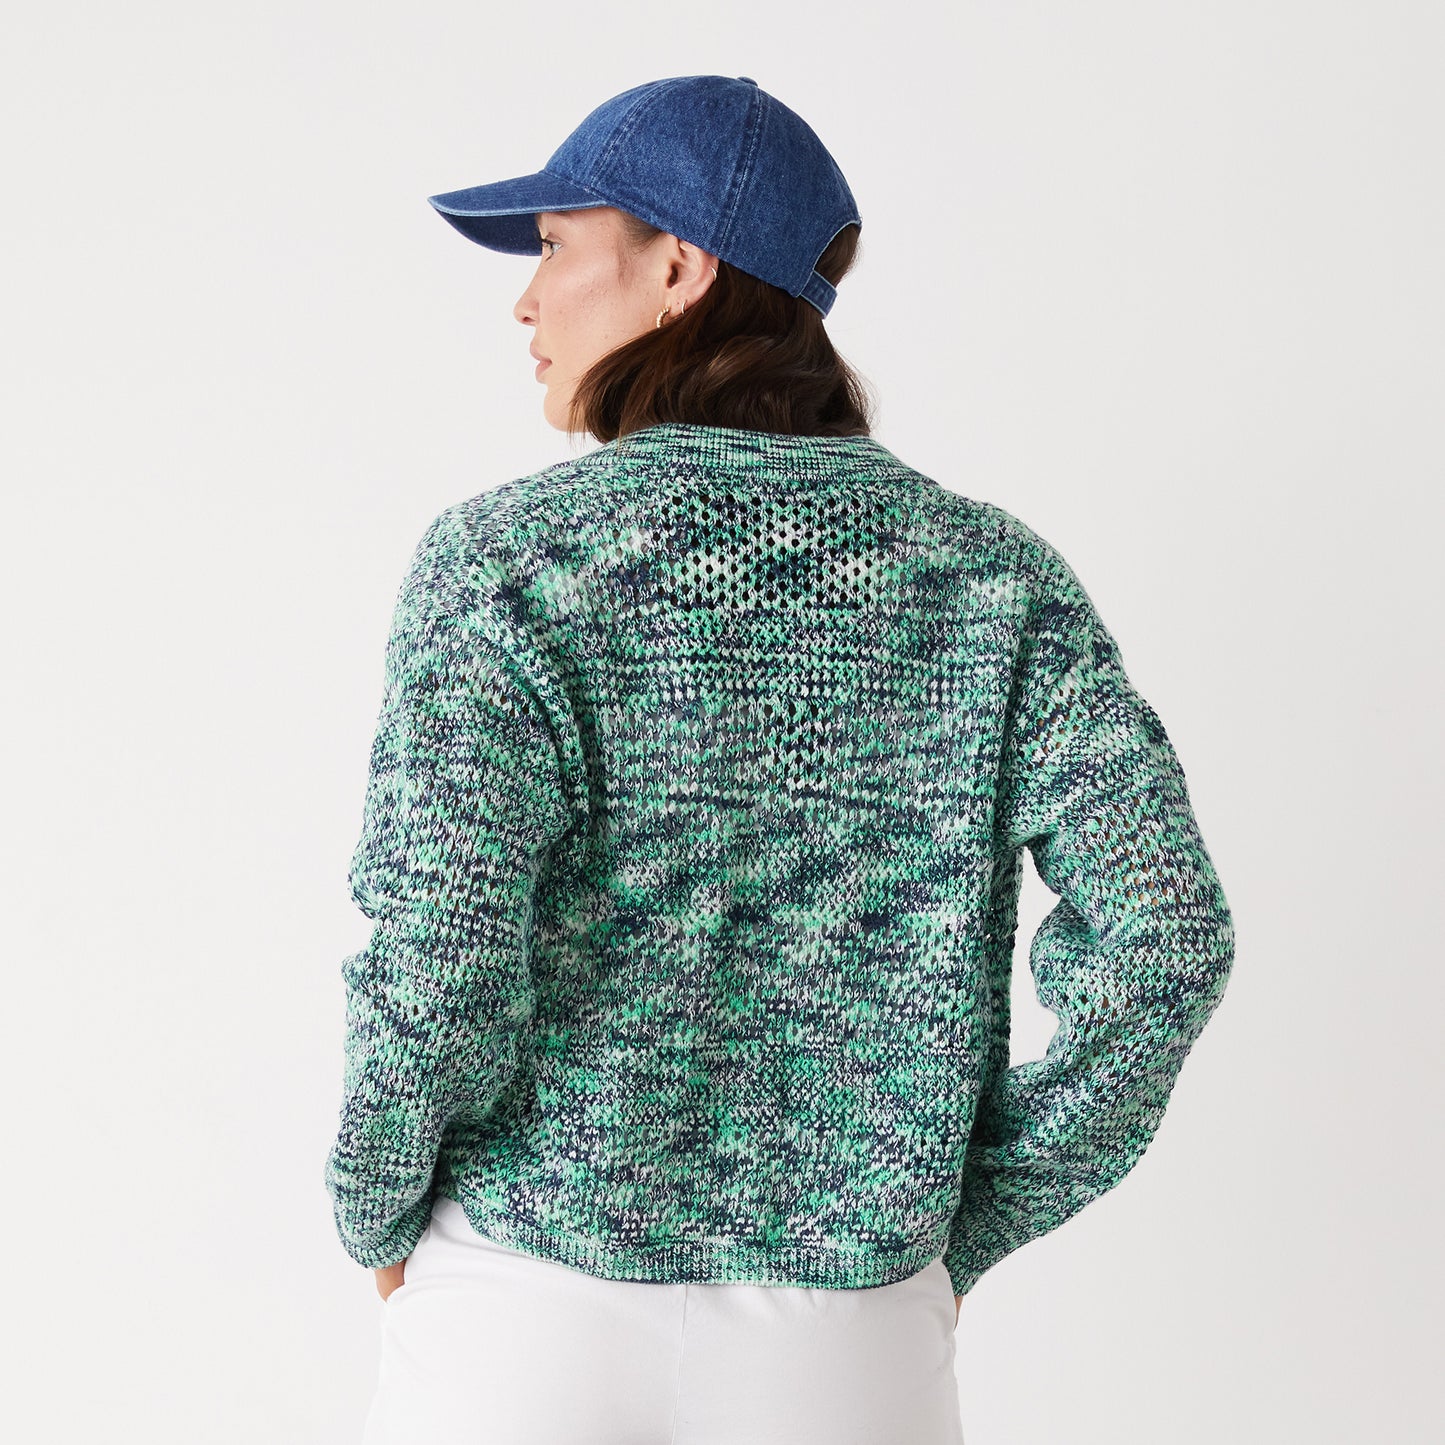 Space-dye Crochet Cardigan